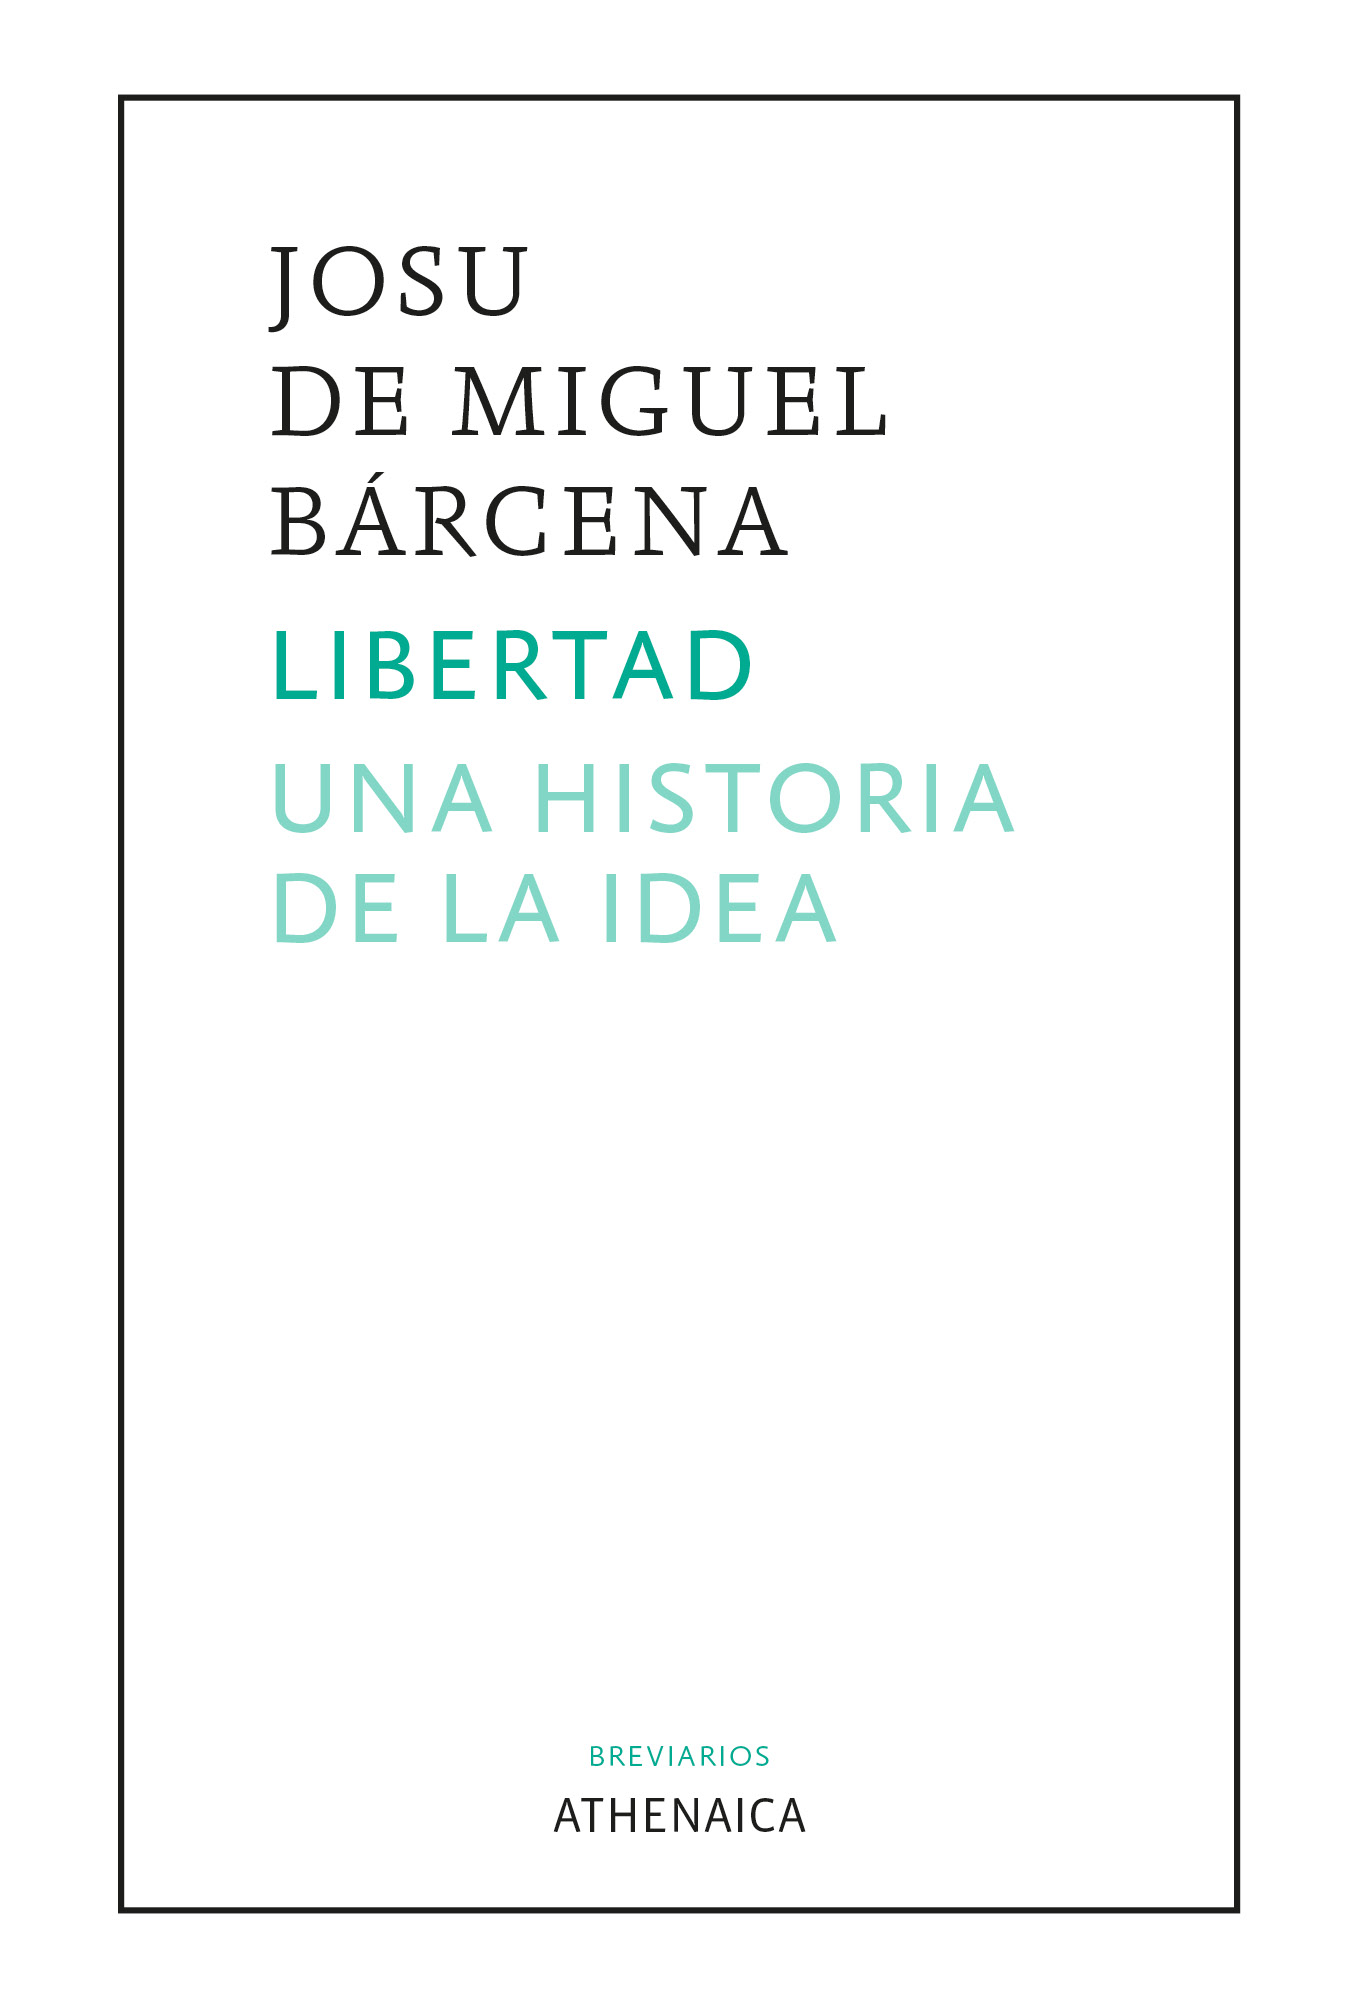 Imagen de portada del libro Libertad